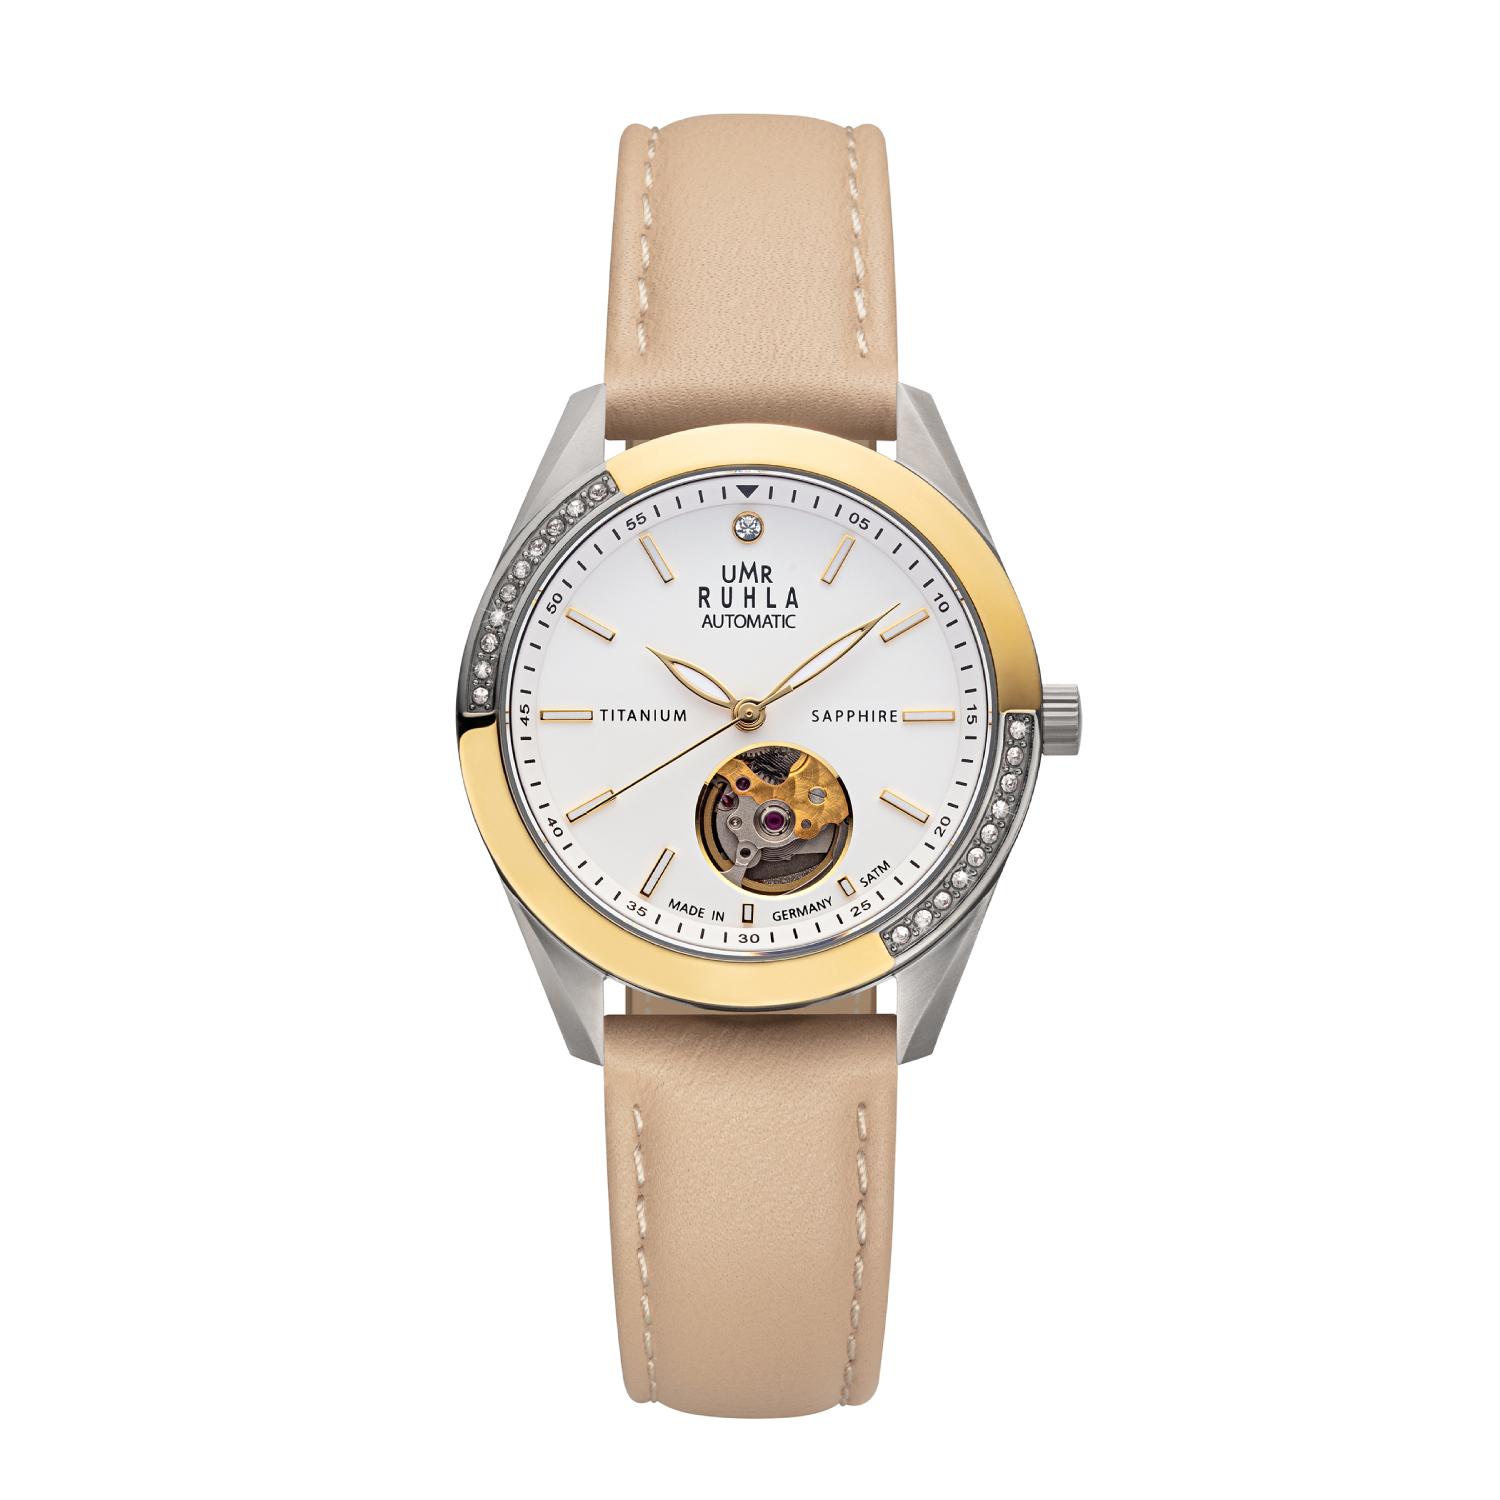 Uhren Manufaktur Ruhla - Automatik-Armbanduhr - Lederband beige